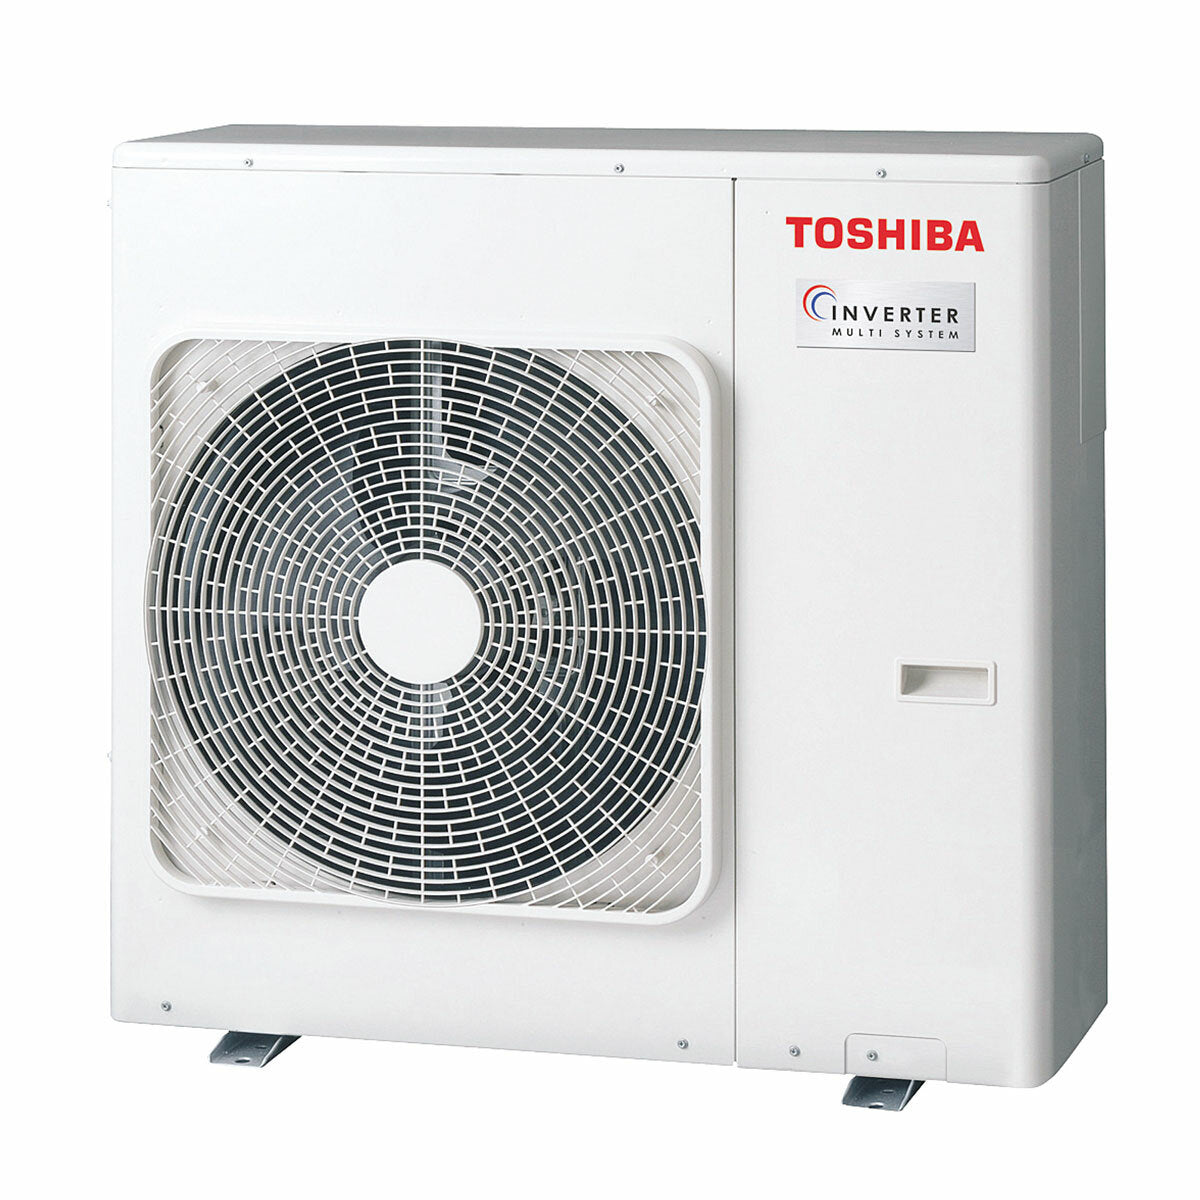 Climatiseur quadri split Toshiba Shorai R32 5000 + 5000 + 5000 + 5000 BTU inverter A++ unité extérieure 8,0 kW